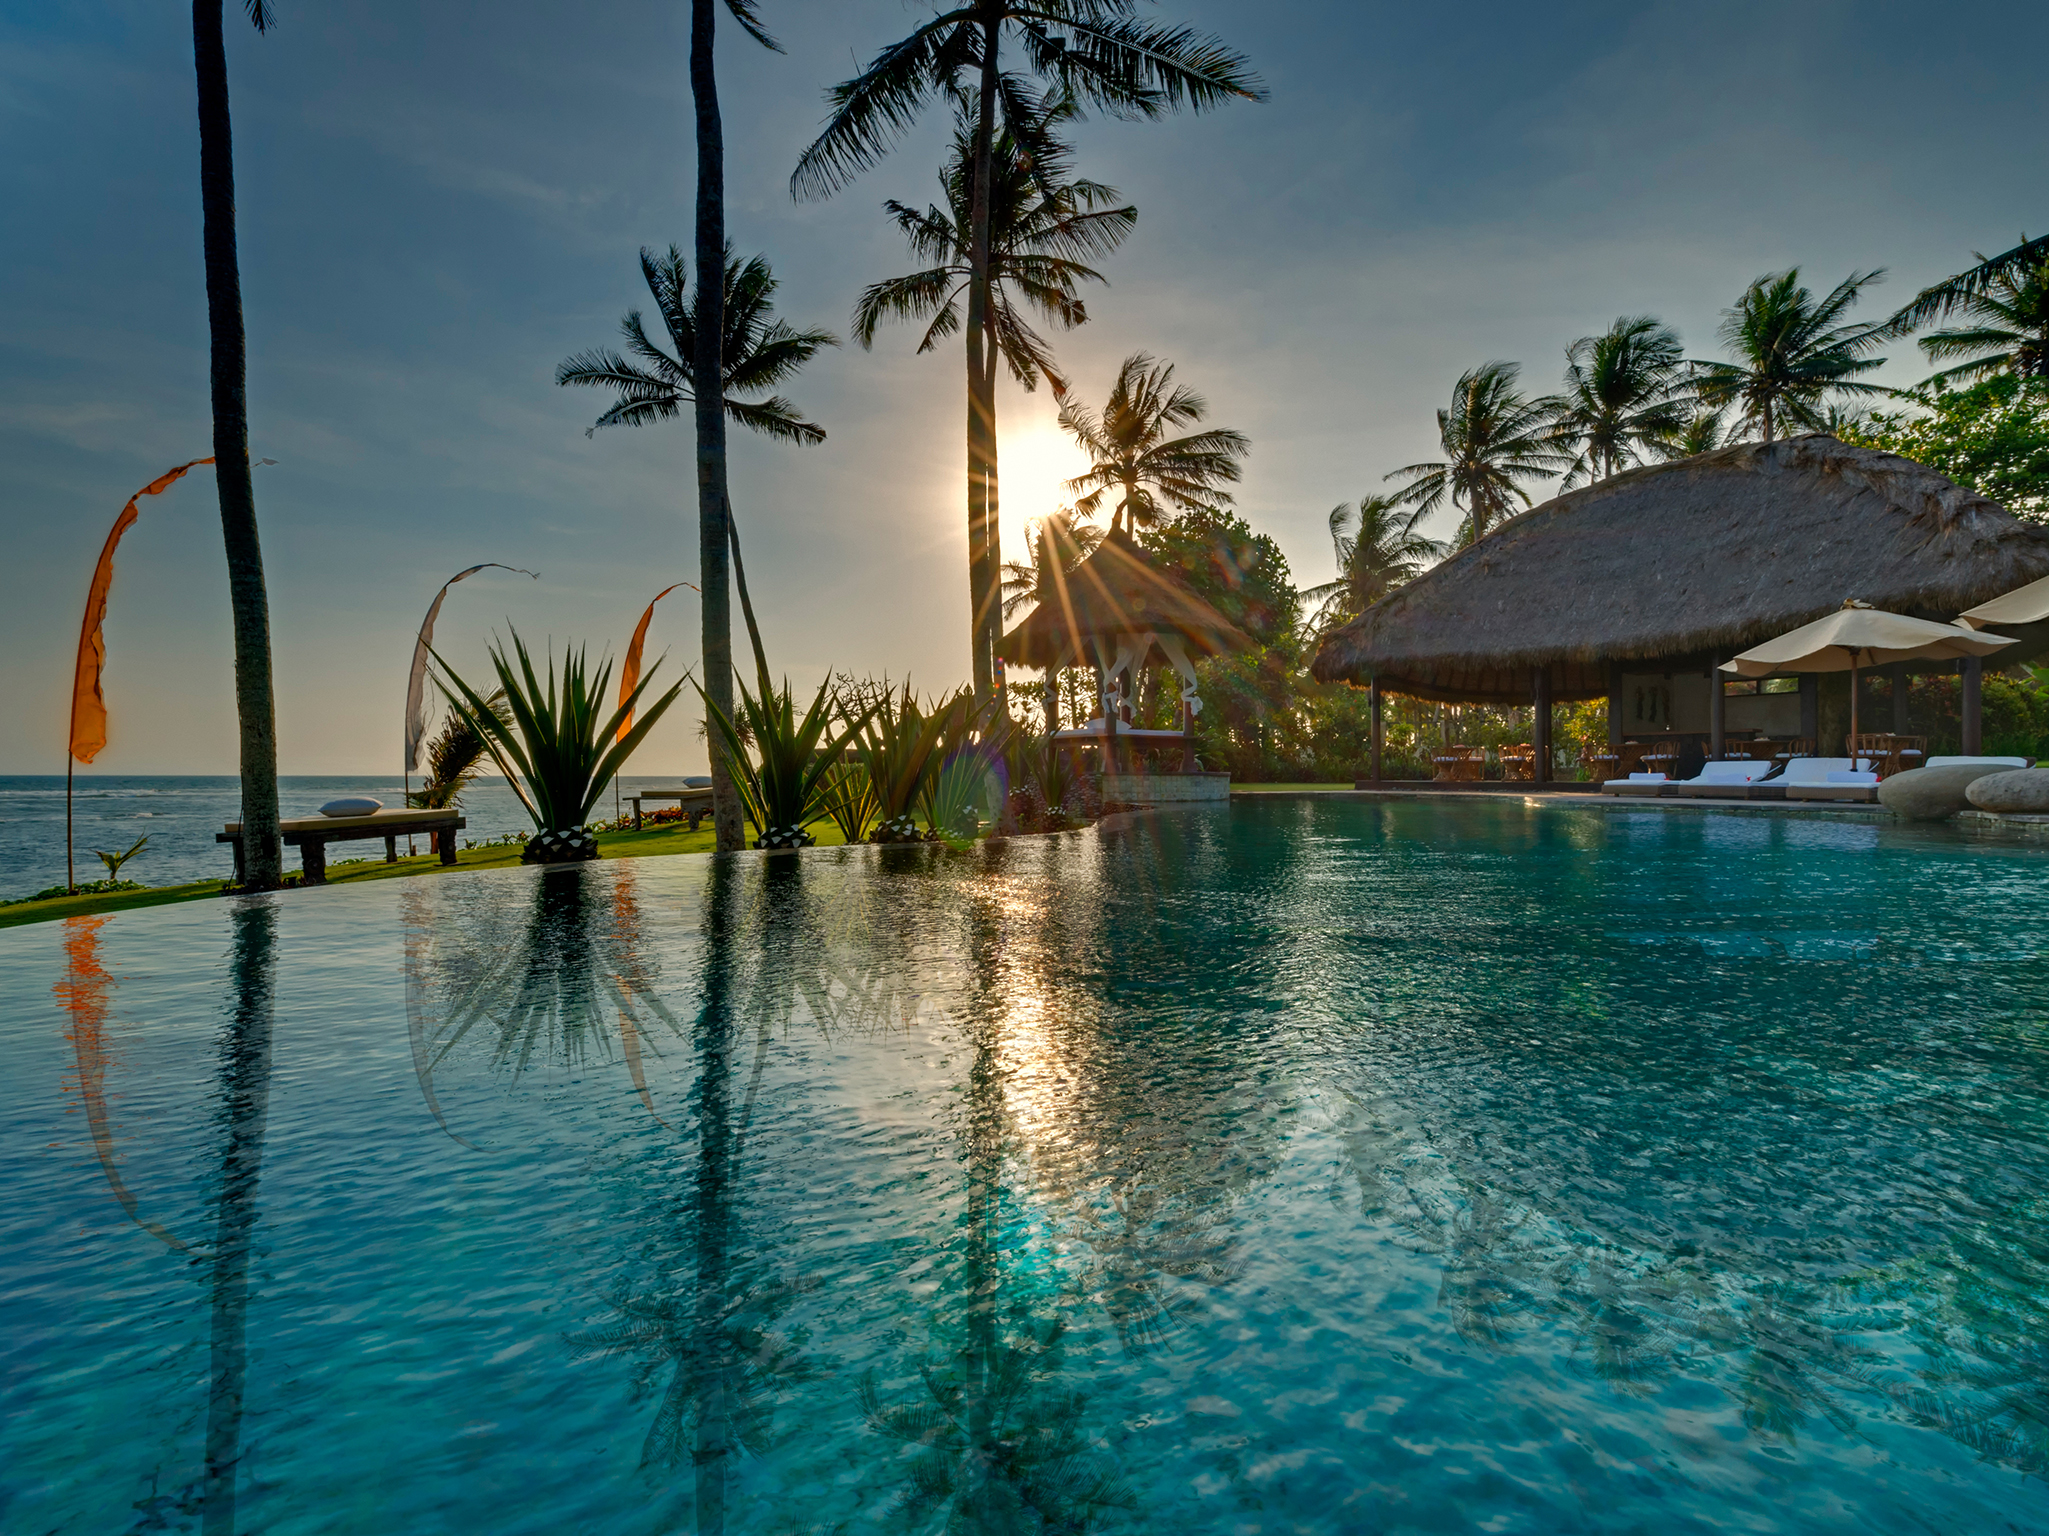 Taman Ahimsa - View across pool at sunset - Taman Ahimsa, Seseh-Tanah Lot, Bali